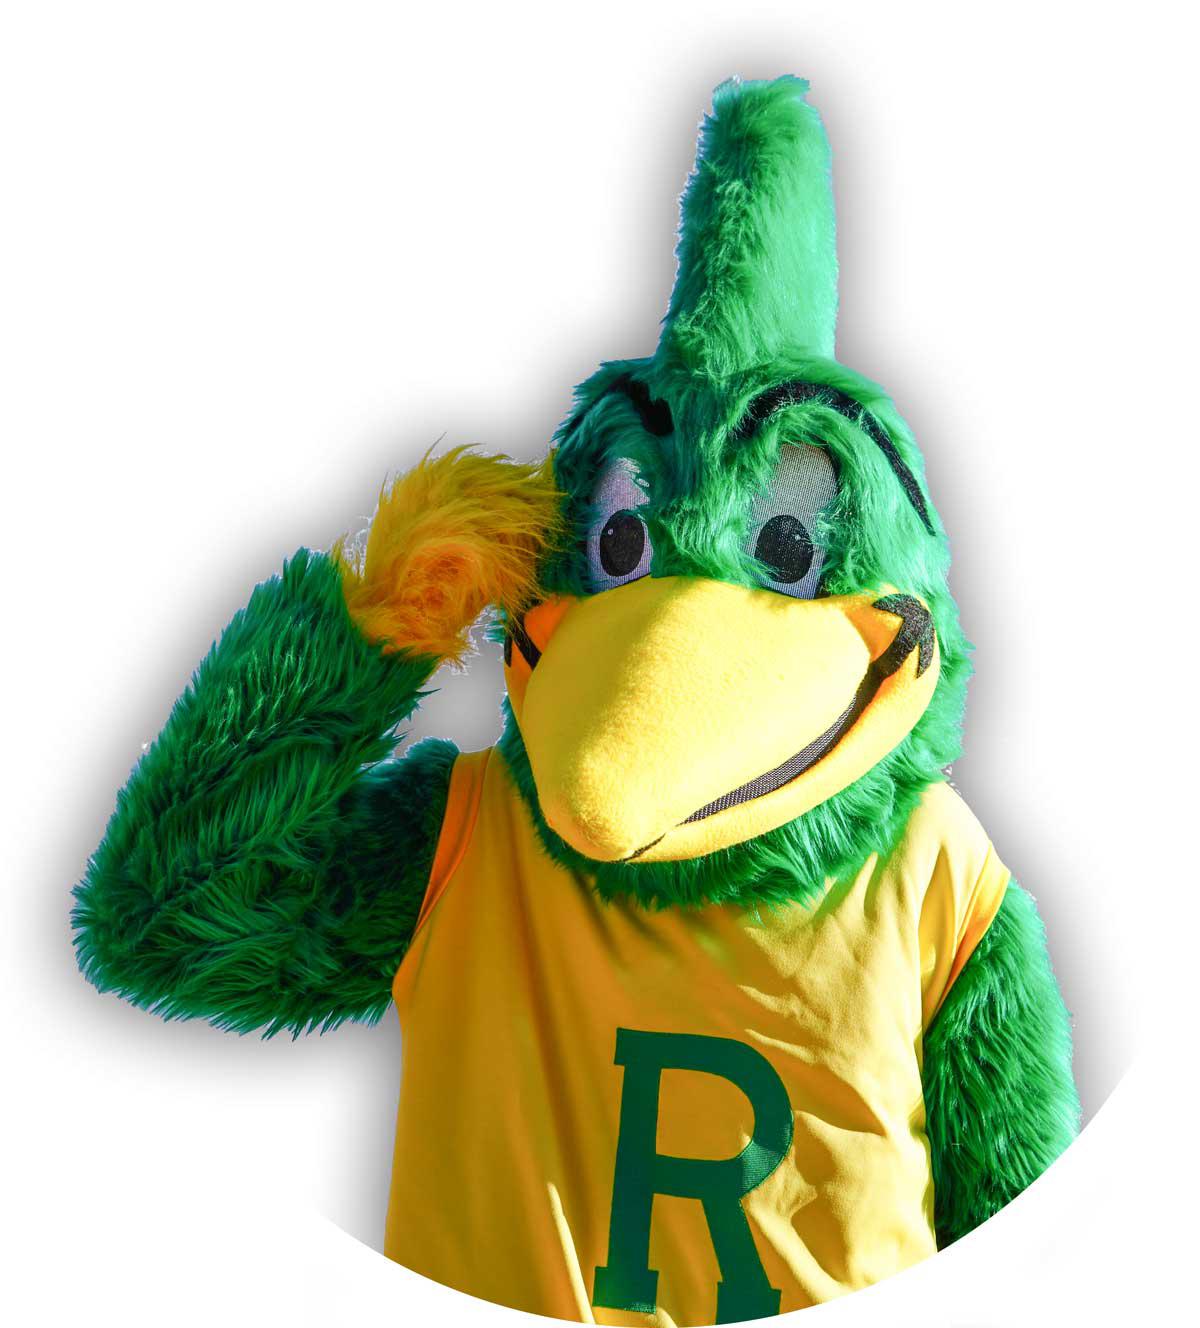 Roadrunner mascot